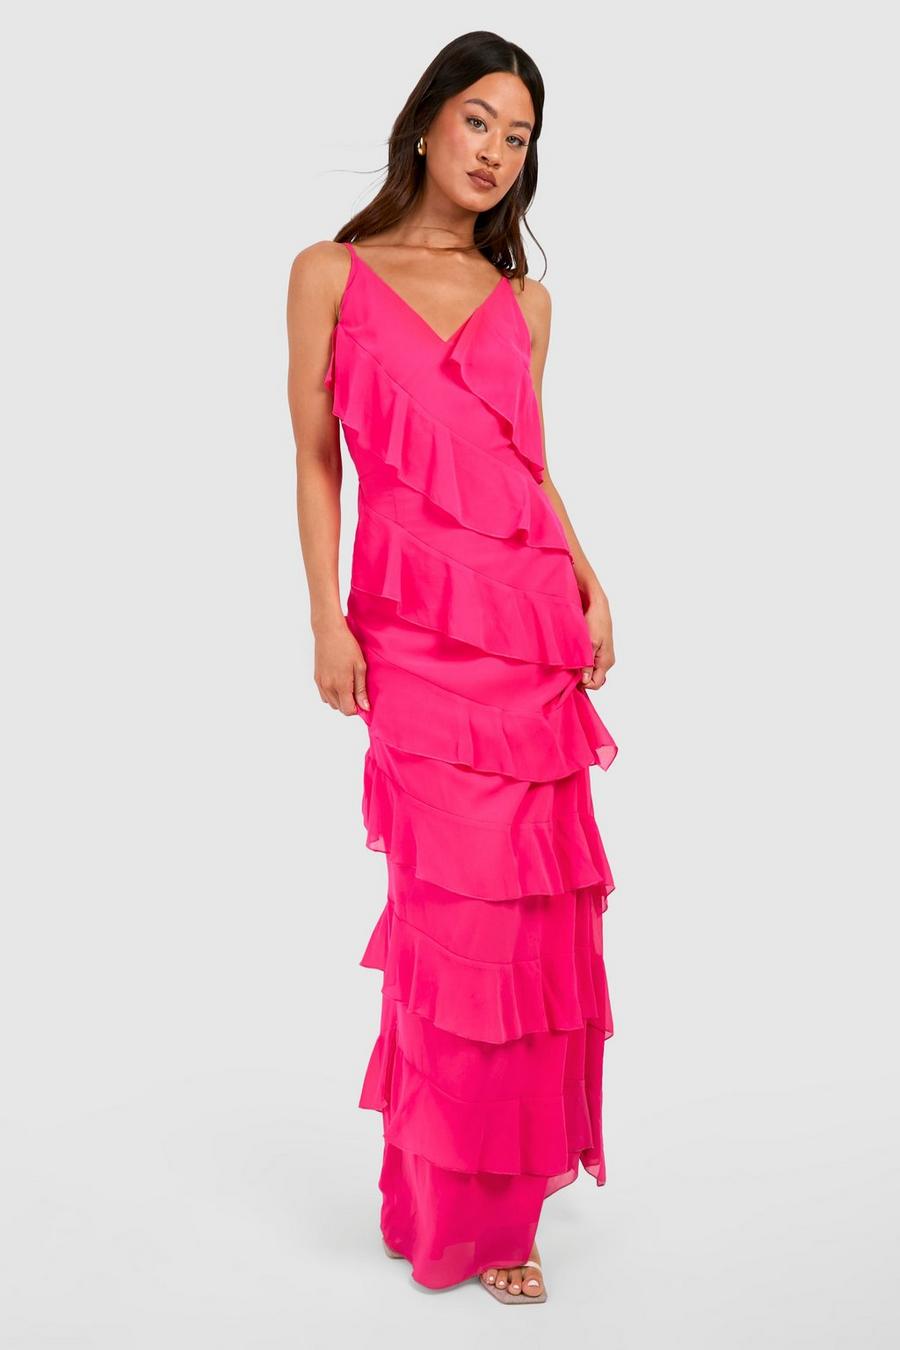 Fuchsia pink Tall Chiffon Ruffle Maxi Dress